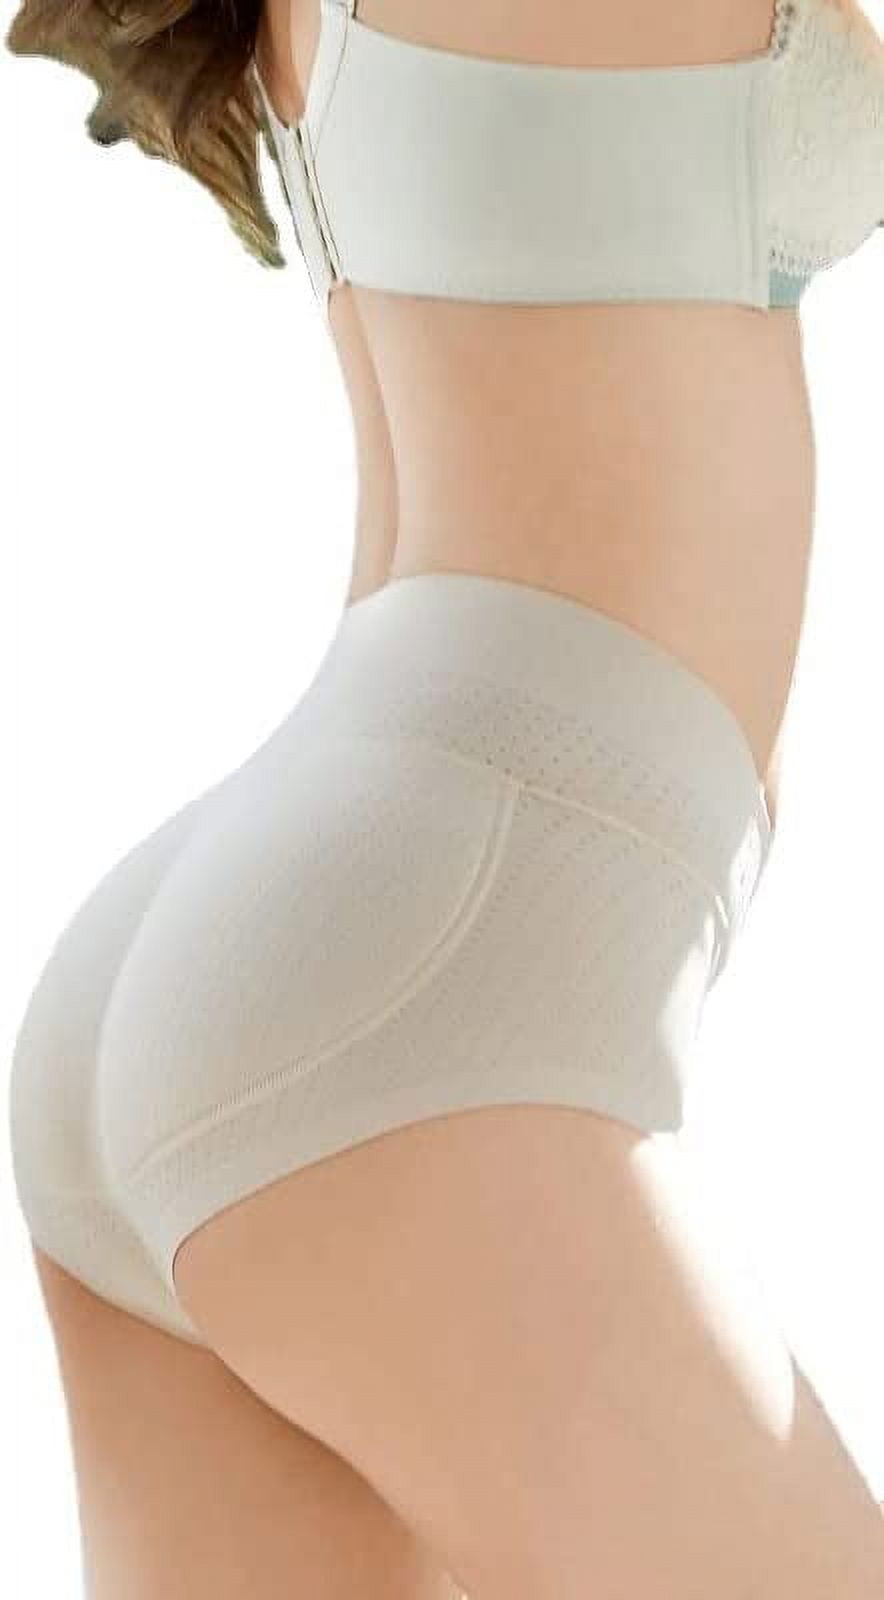 Women Butt Lifter Shapewear,Soft Breathable Hip Buttocks Lift